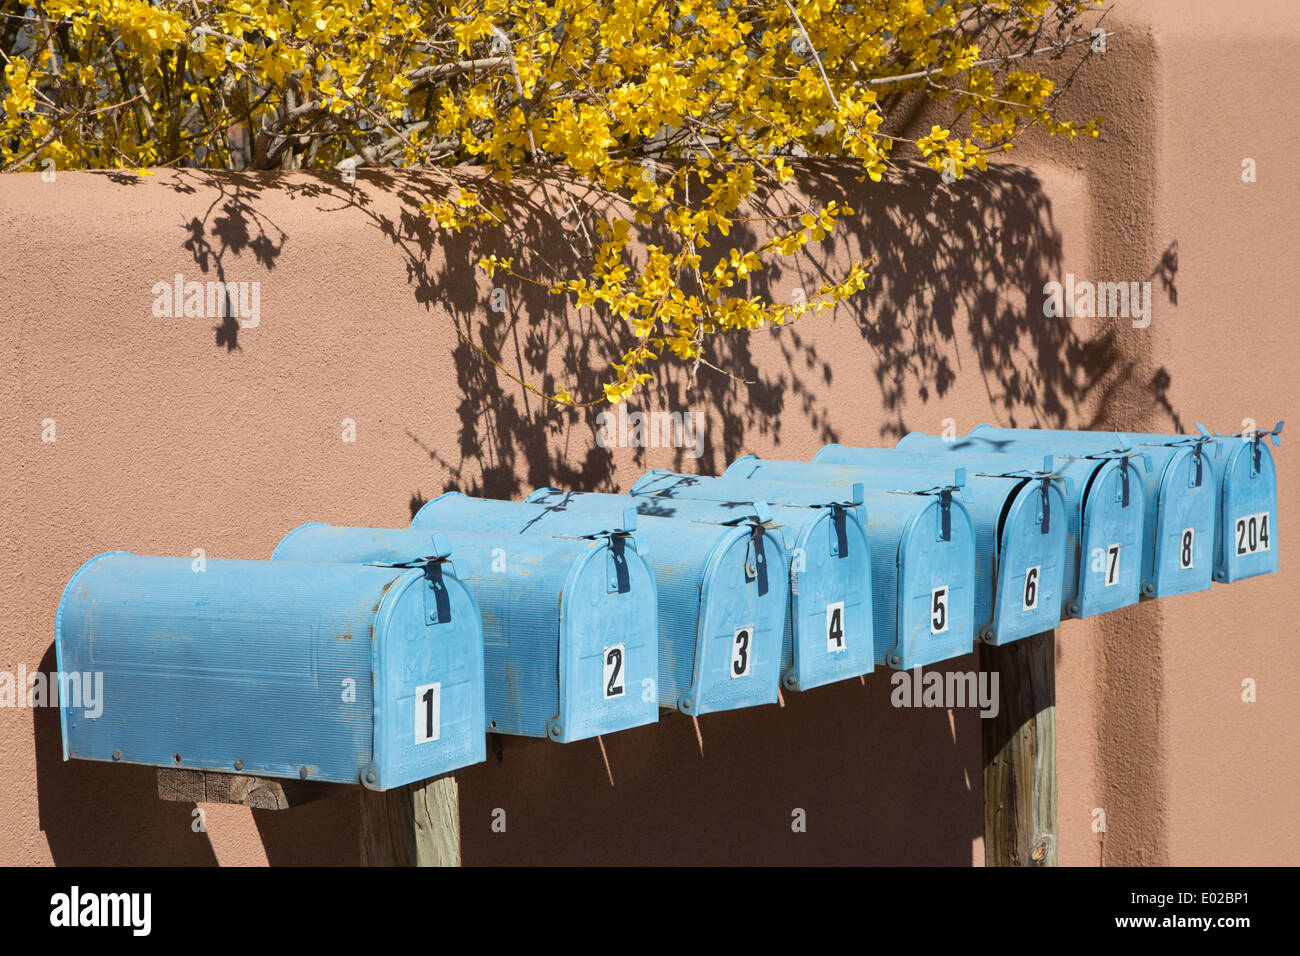 Reihe von blauen Postfächer nummeriert von 1 bis 8 und 204. Stockfoto